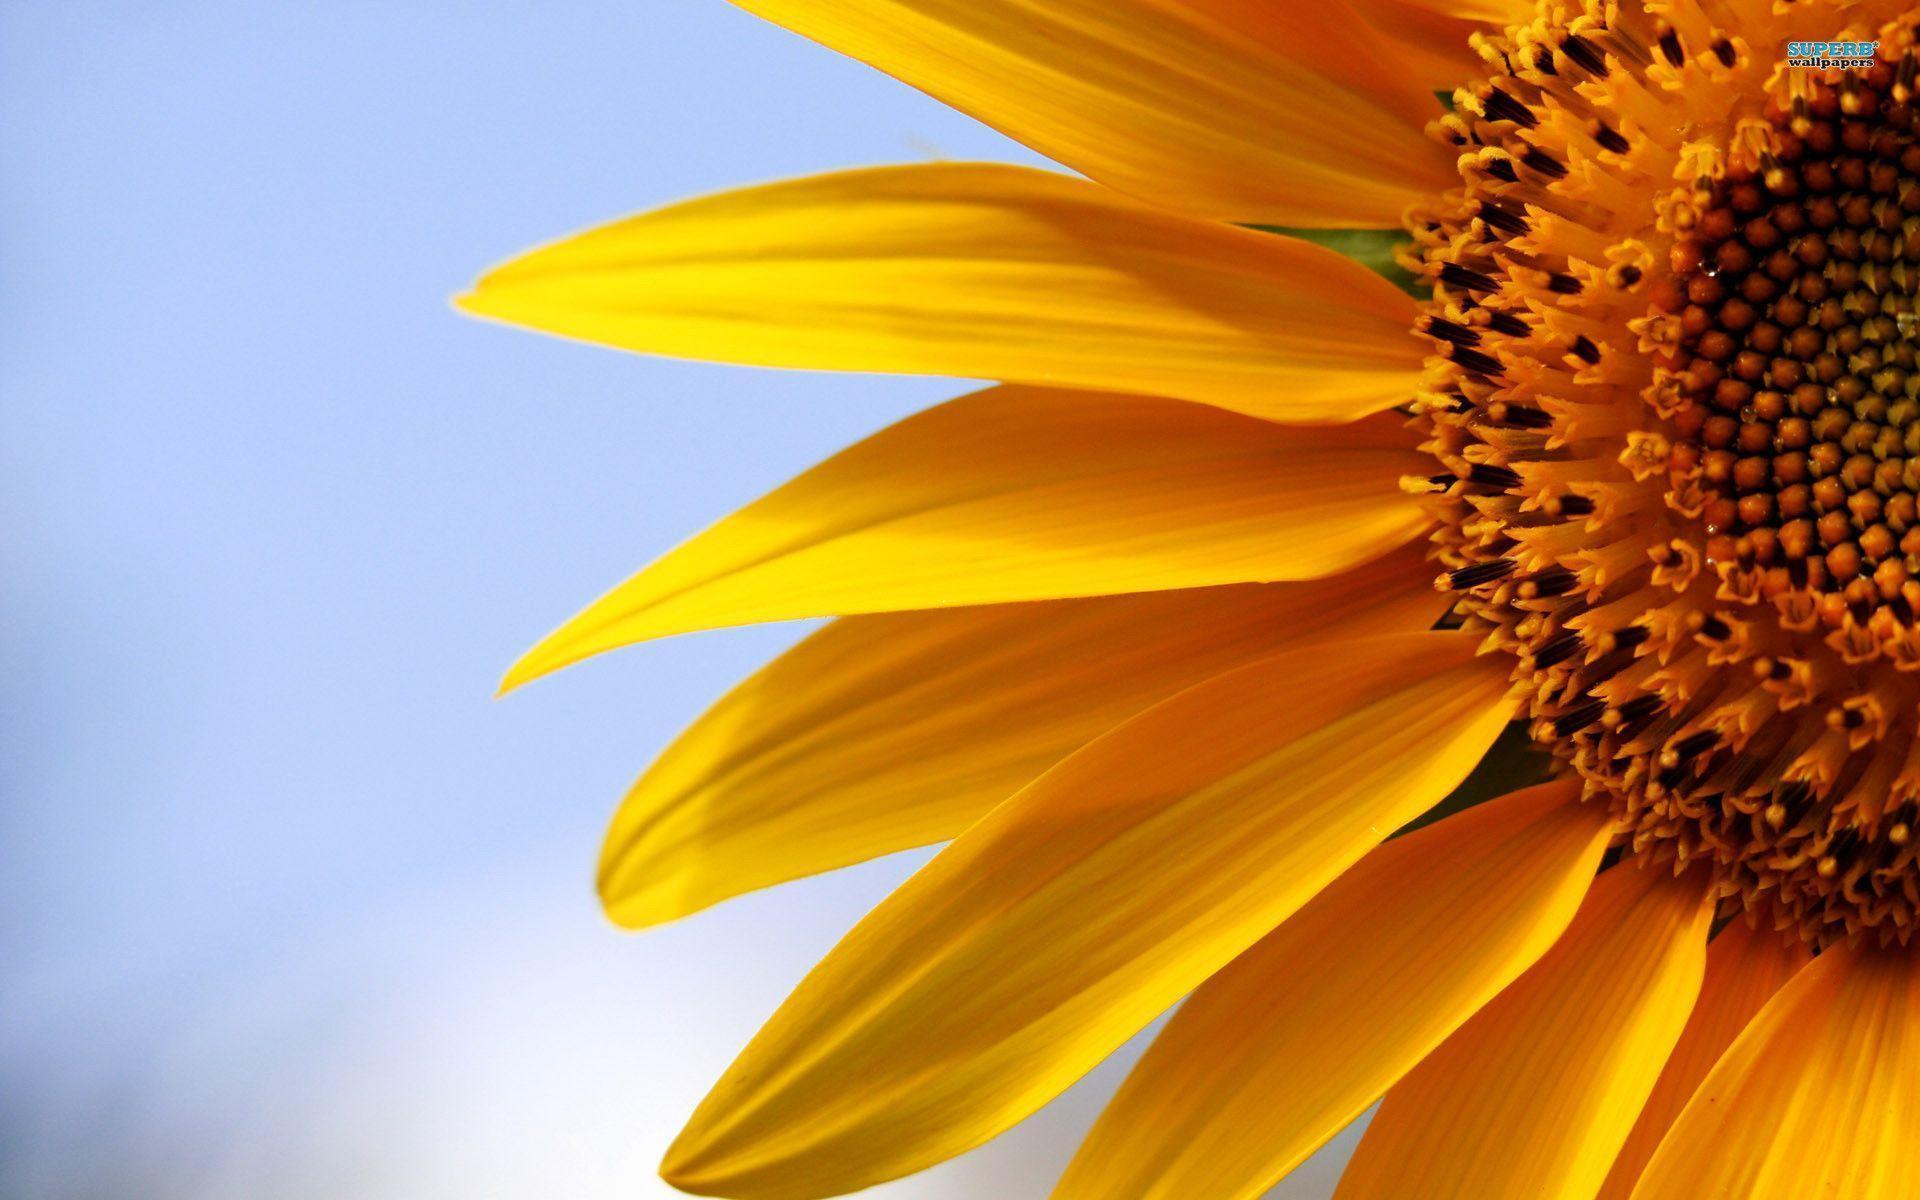 Hình nền hoa hướng dương với sự kết hợp hài hòa giữa màu vàng và muôn sắc hoa tươi mang lại cảm giác sảng khoái và mới mẻ cho bạn. Để tận hưởng vẻ đẹp tuyệt vời này, truy cập trang web của chúng tôi ngay hôm nay và tải xuống những hình nền tuyệt đẹp này!